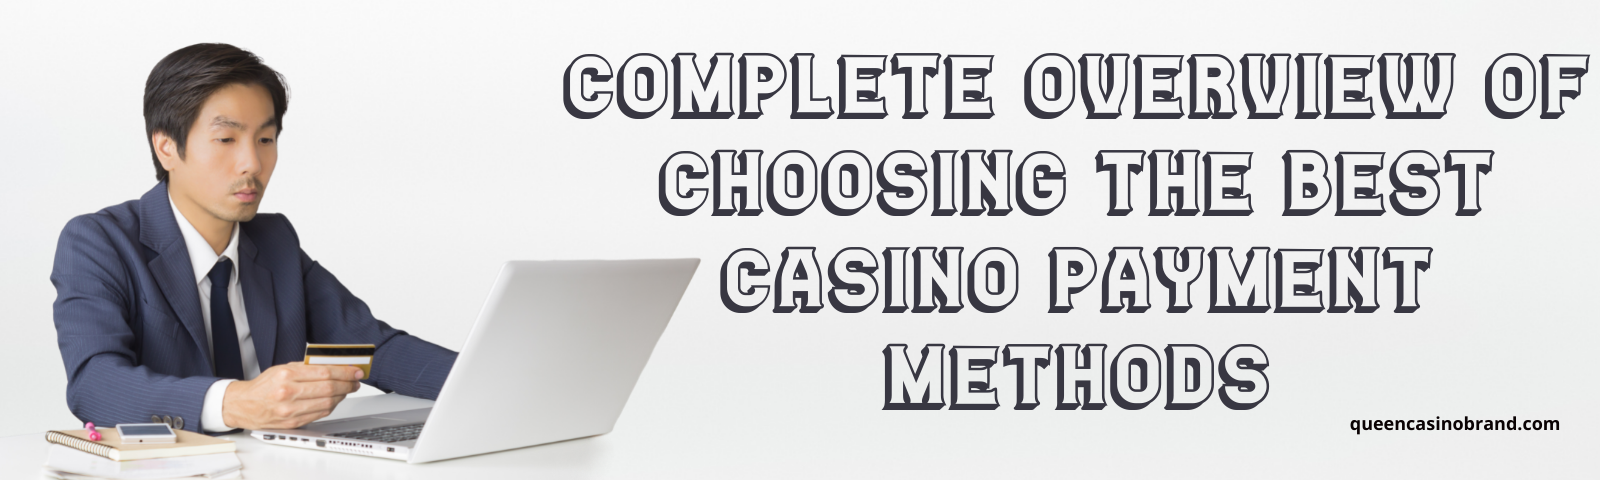 Complete Overview of Choosing the Best Casino Payment Methods | Queen Casino Brand